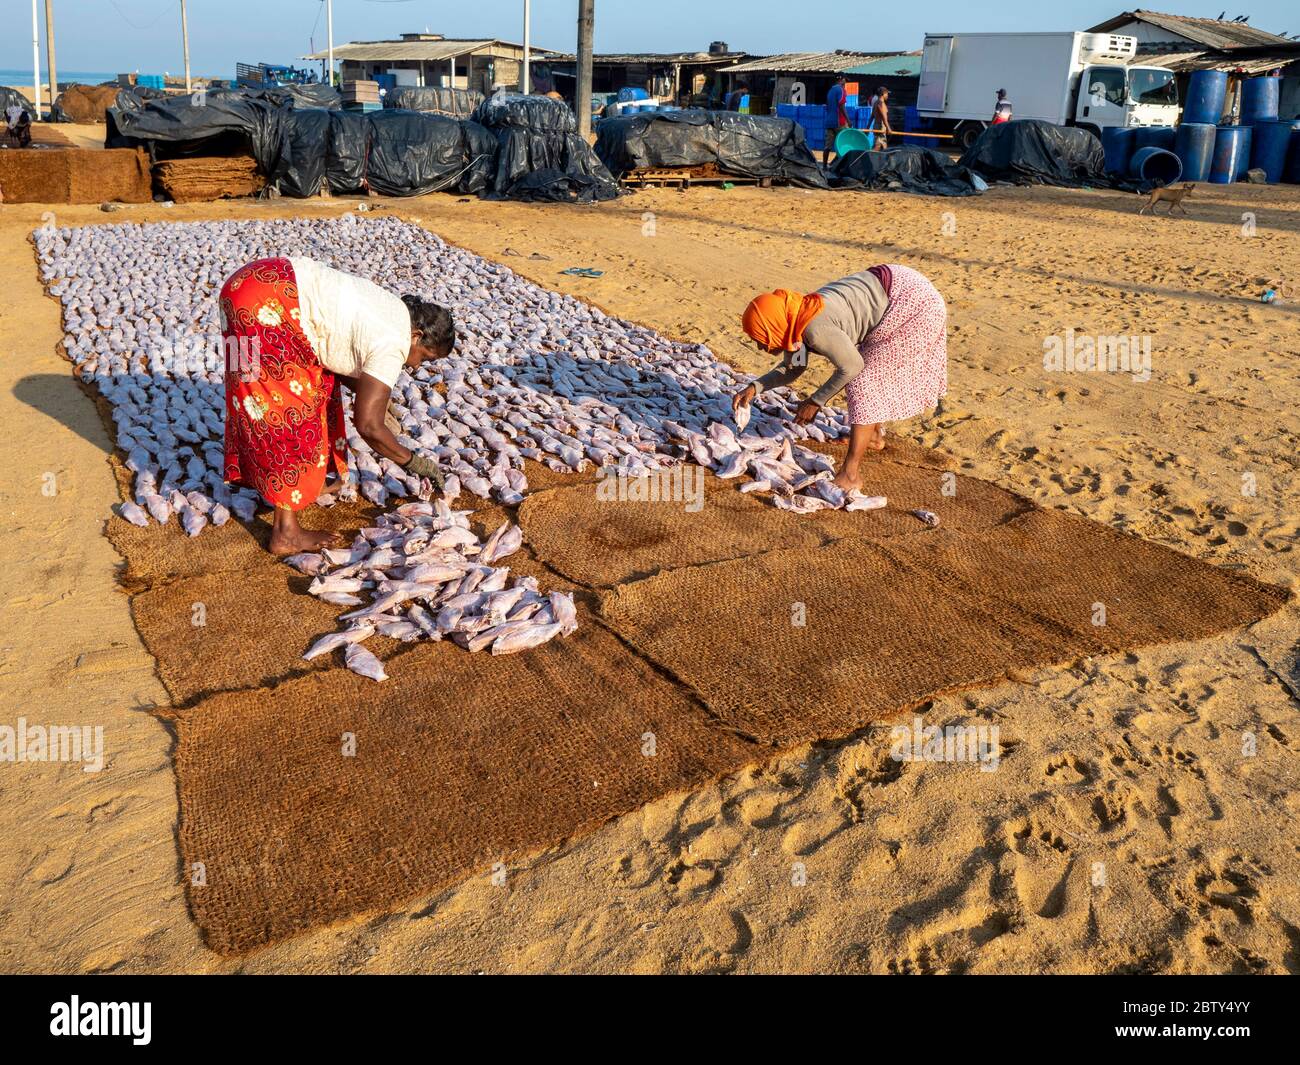 Les travailleurs ont posé les jours de prise à sécher au soleil au marché du poisson Negombo, Negombo, Sri Lanka, Asie Banque D'Images